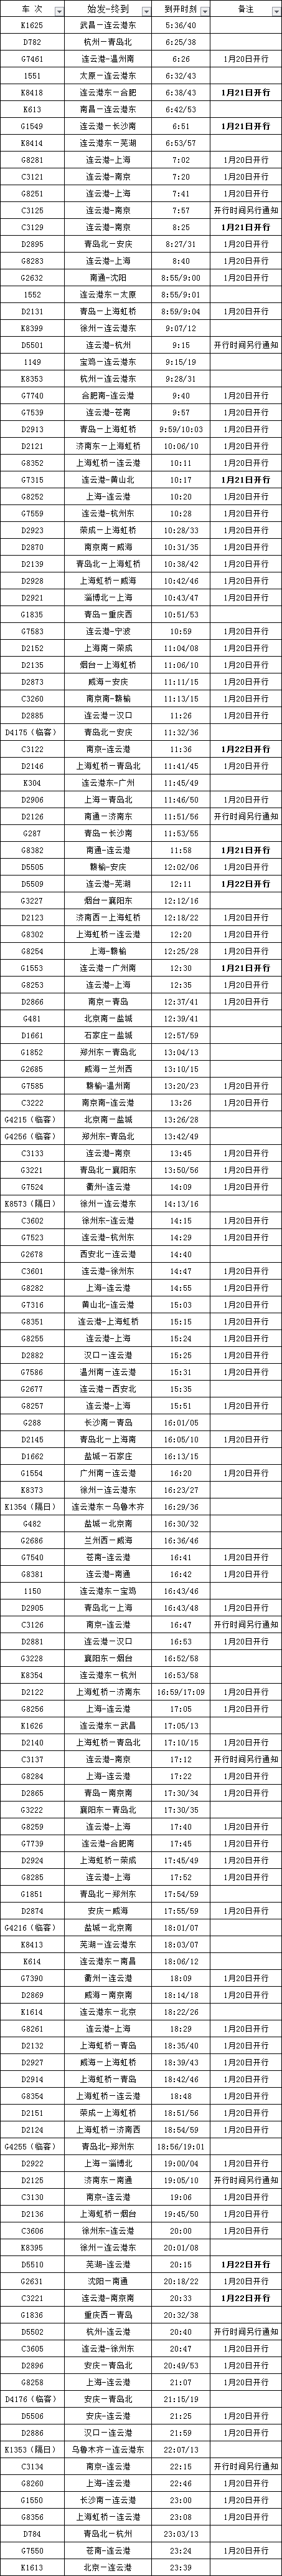 连云港高铁最新调图时刻表,来了!